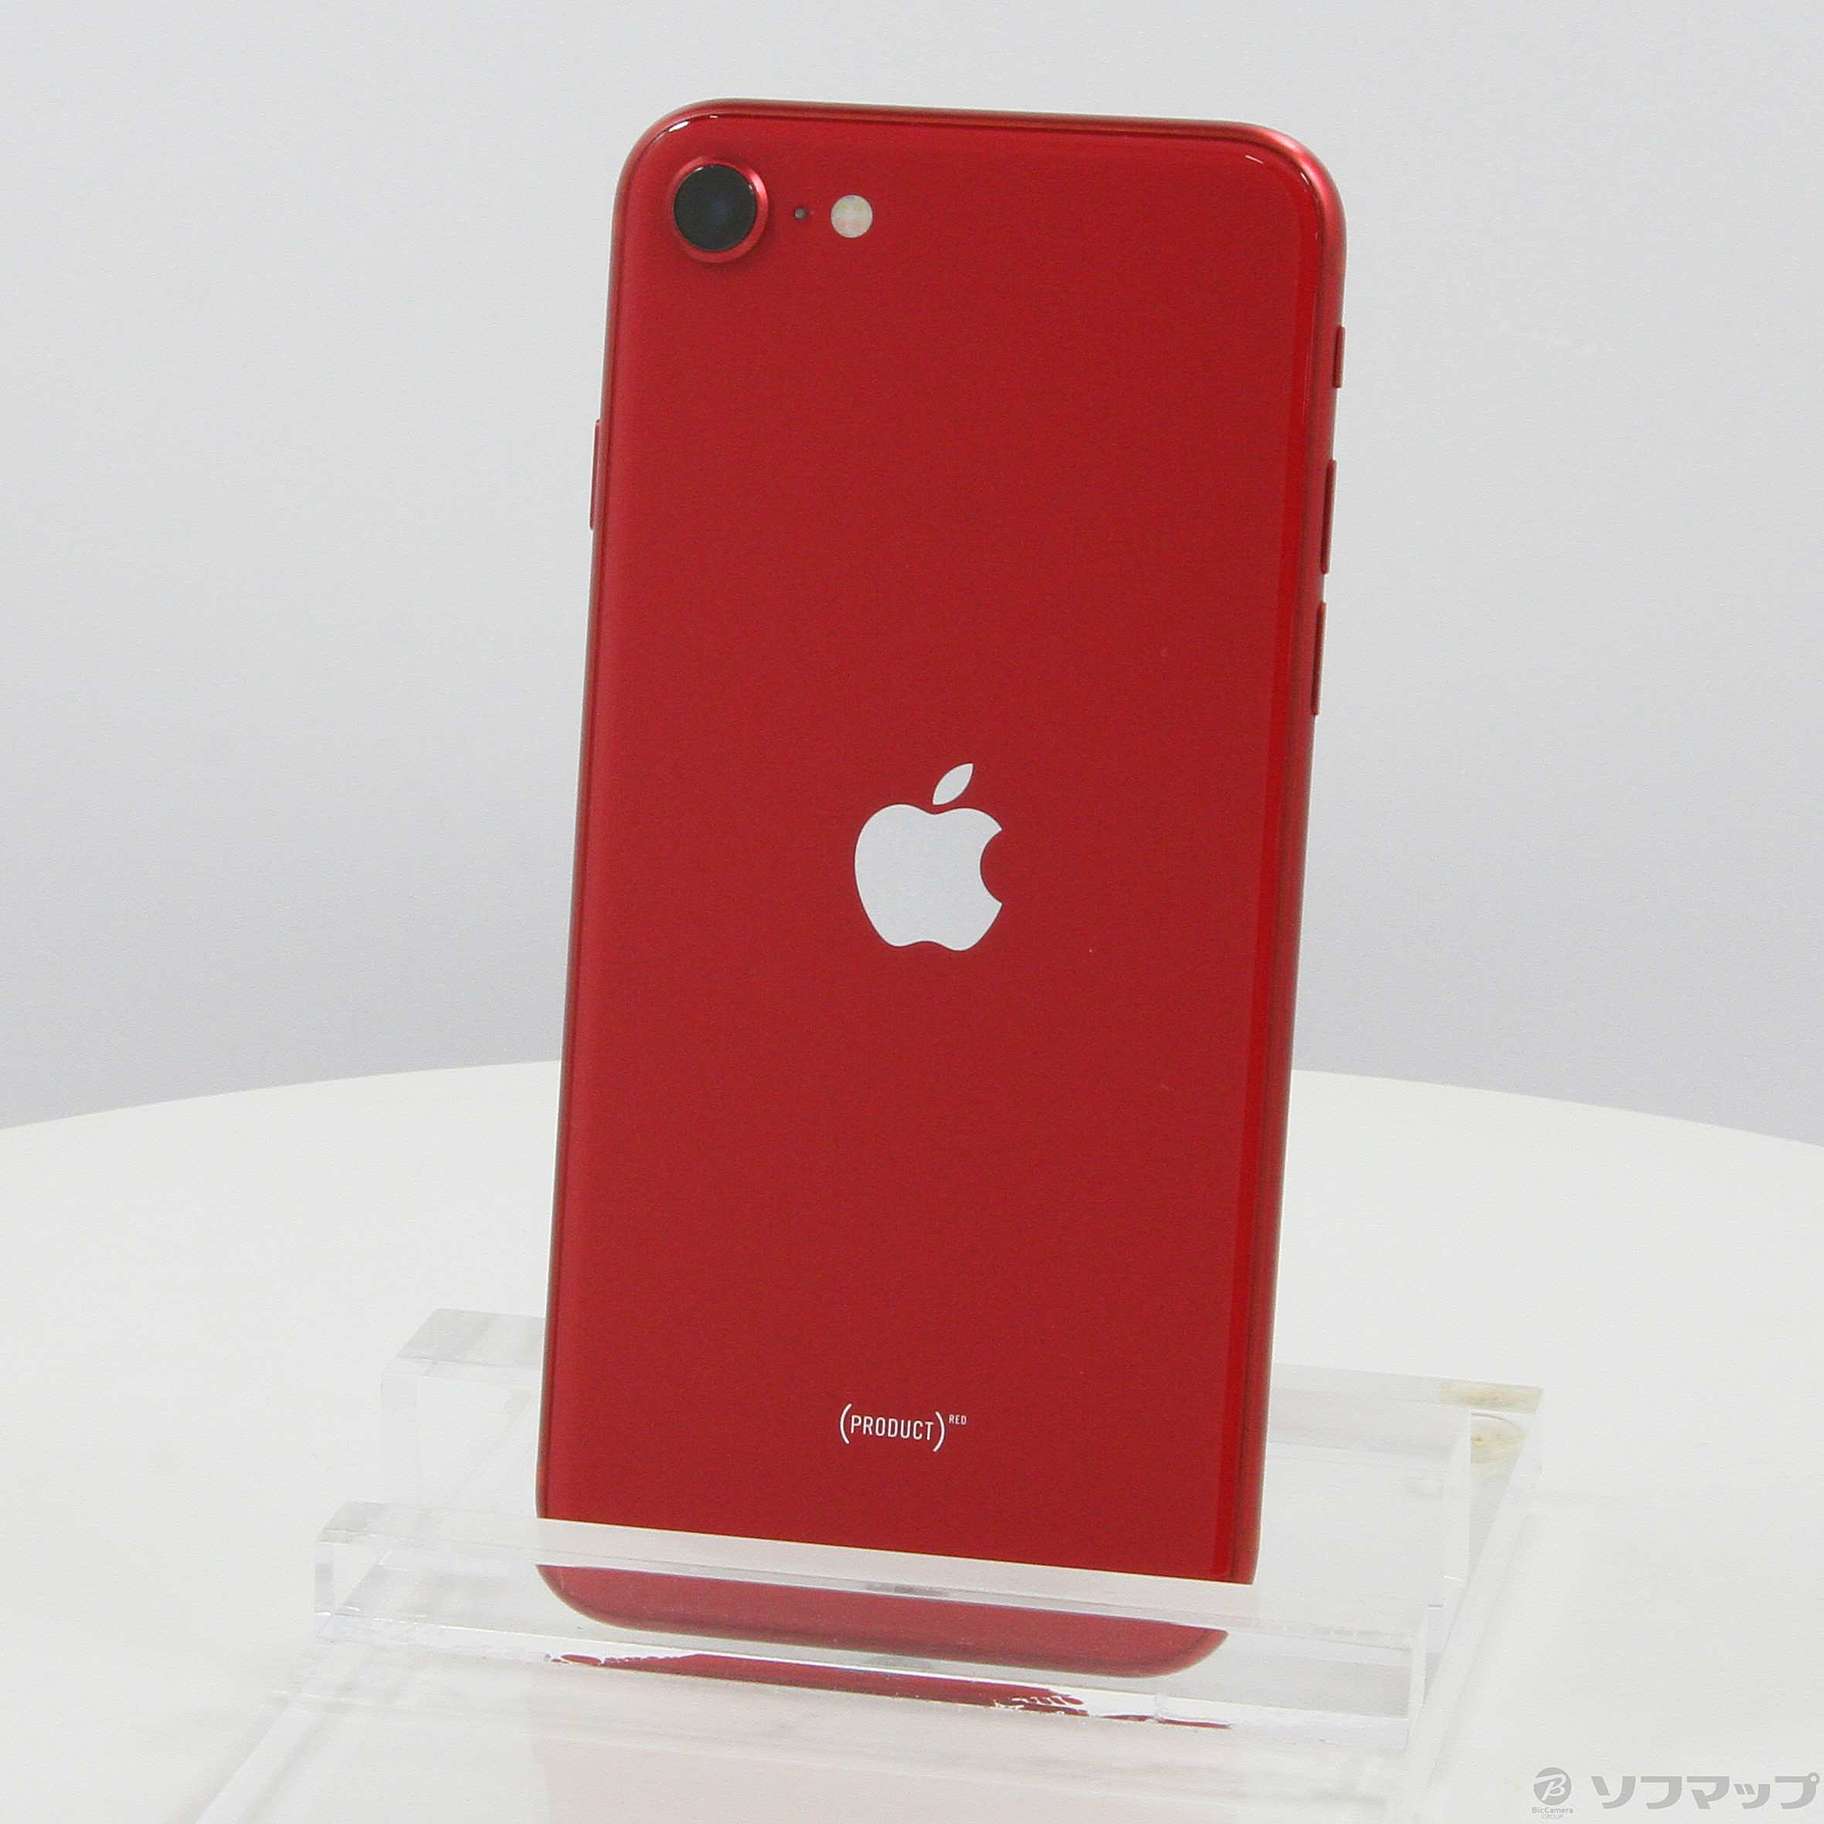 アップルストアから購入 SIMフリー iPhone SE 第二世代 product RED 128GB - スマホ